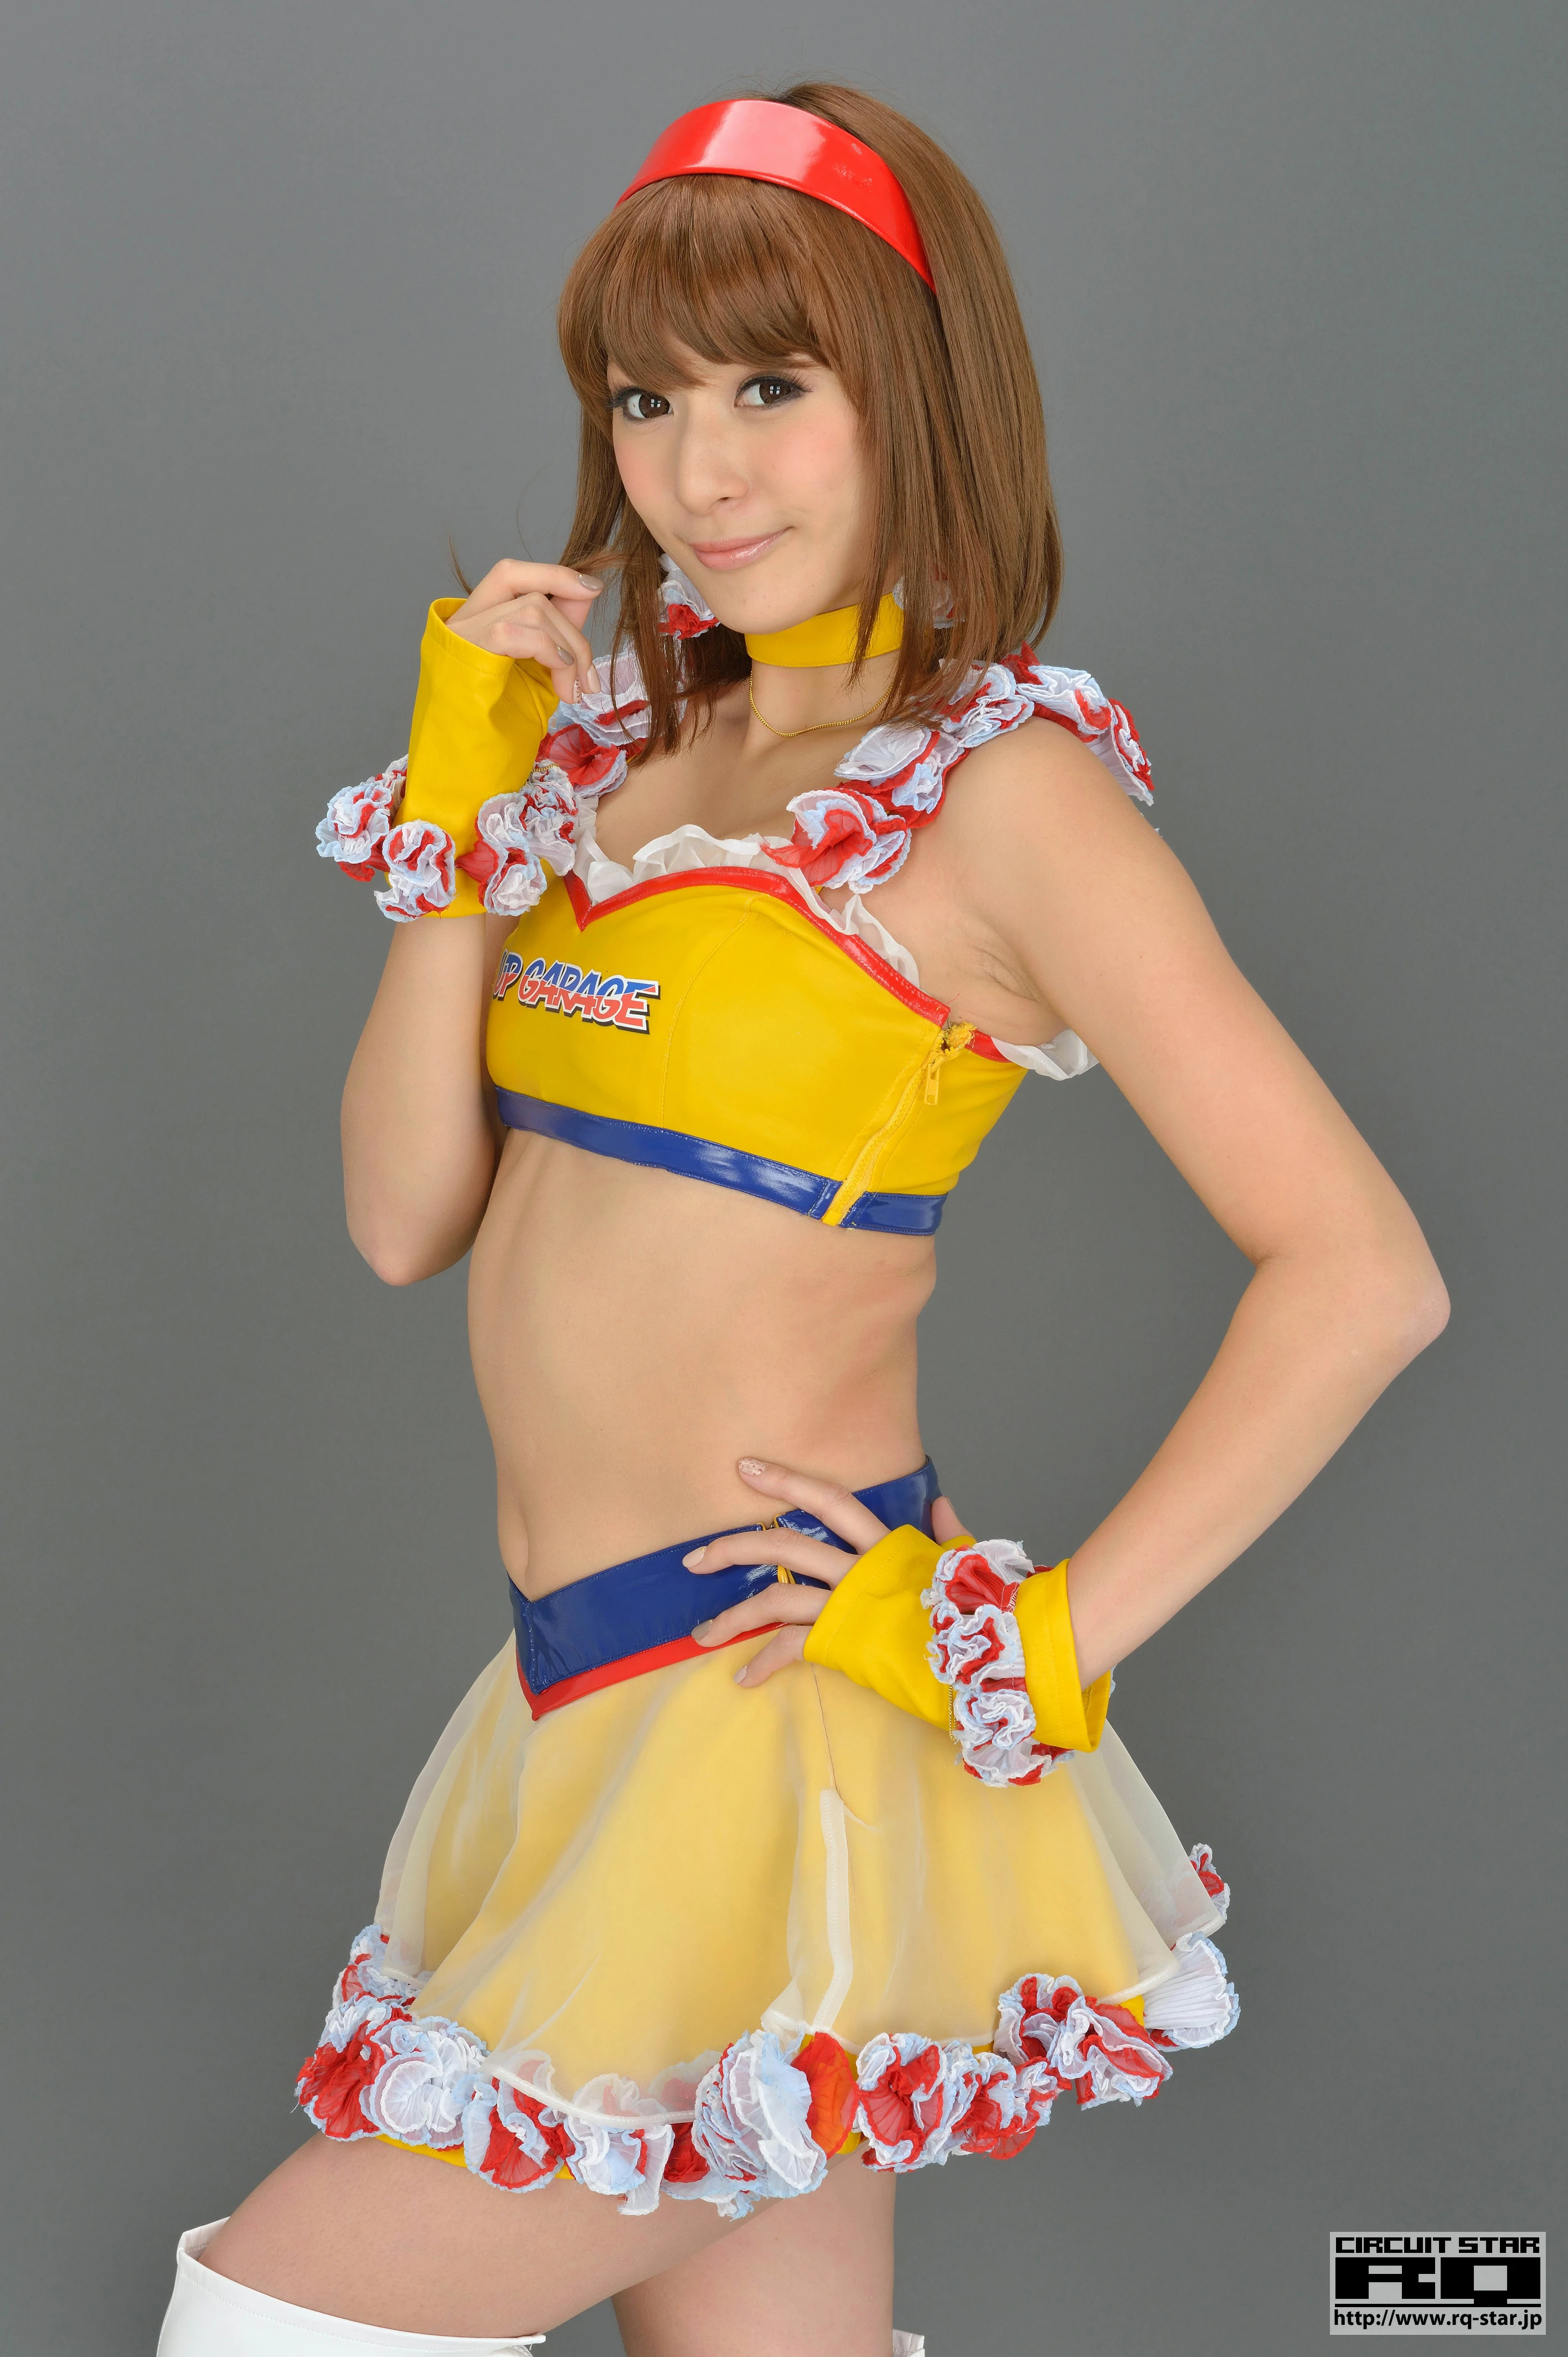 [RQ-STAR写真]NO.00733 日本赛车女郎 しばはらまい（柴原麻衣，Mai Shibahara）黄色制服加短裙性感写真集,027